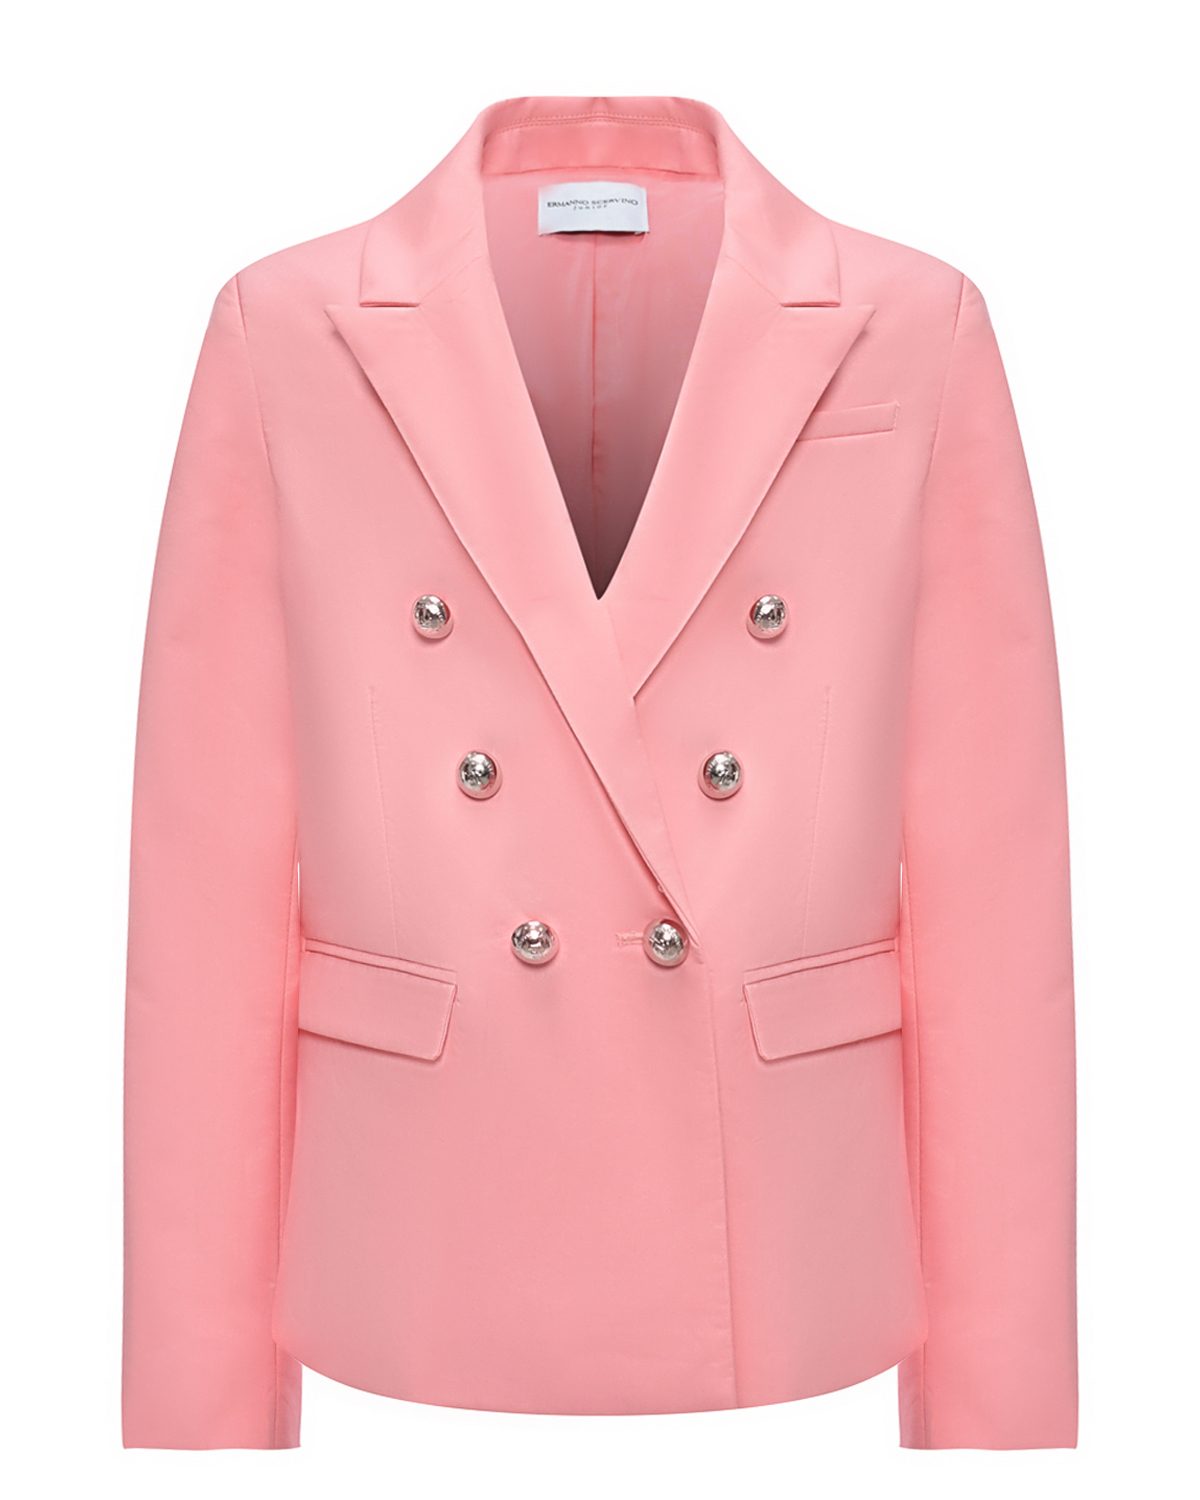 Двубортный пиджак, розовый Ermanno Scervino пиджак двубортный на пуговицах с лацканами синий button blue teens line 164 84 69 xs